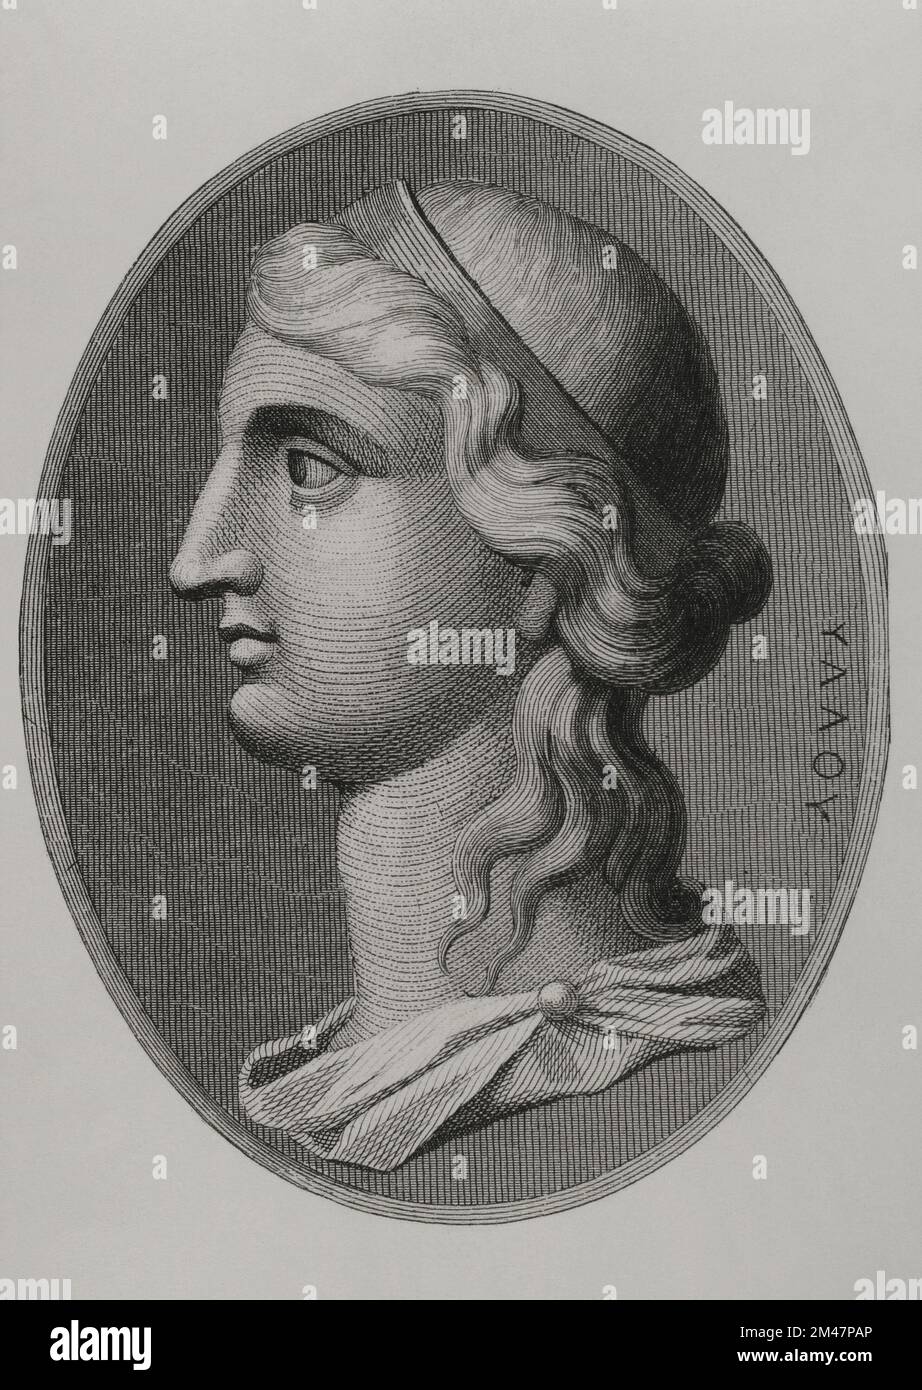 Cleopatra VII Philopator (69 BC - 30 BC). Last queen of Egypt of the Lagid dynasty (51 BC - 30 BC). Portrait. Engraving. 'Los Héroes y las Grandezas de la Tierra'. Volume I. 1854. Stock Photo